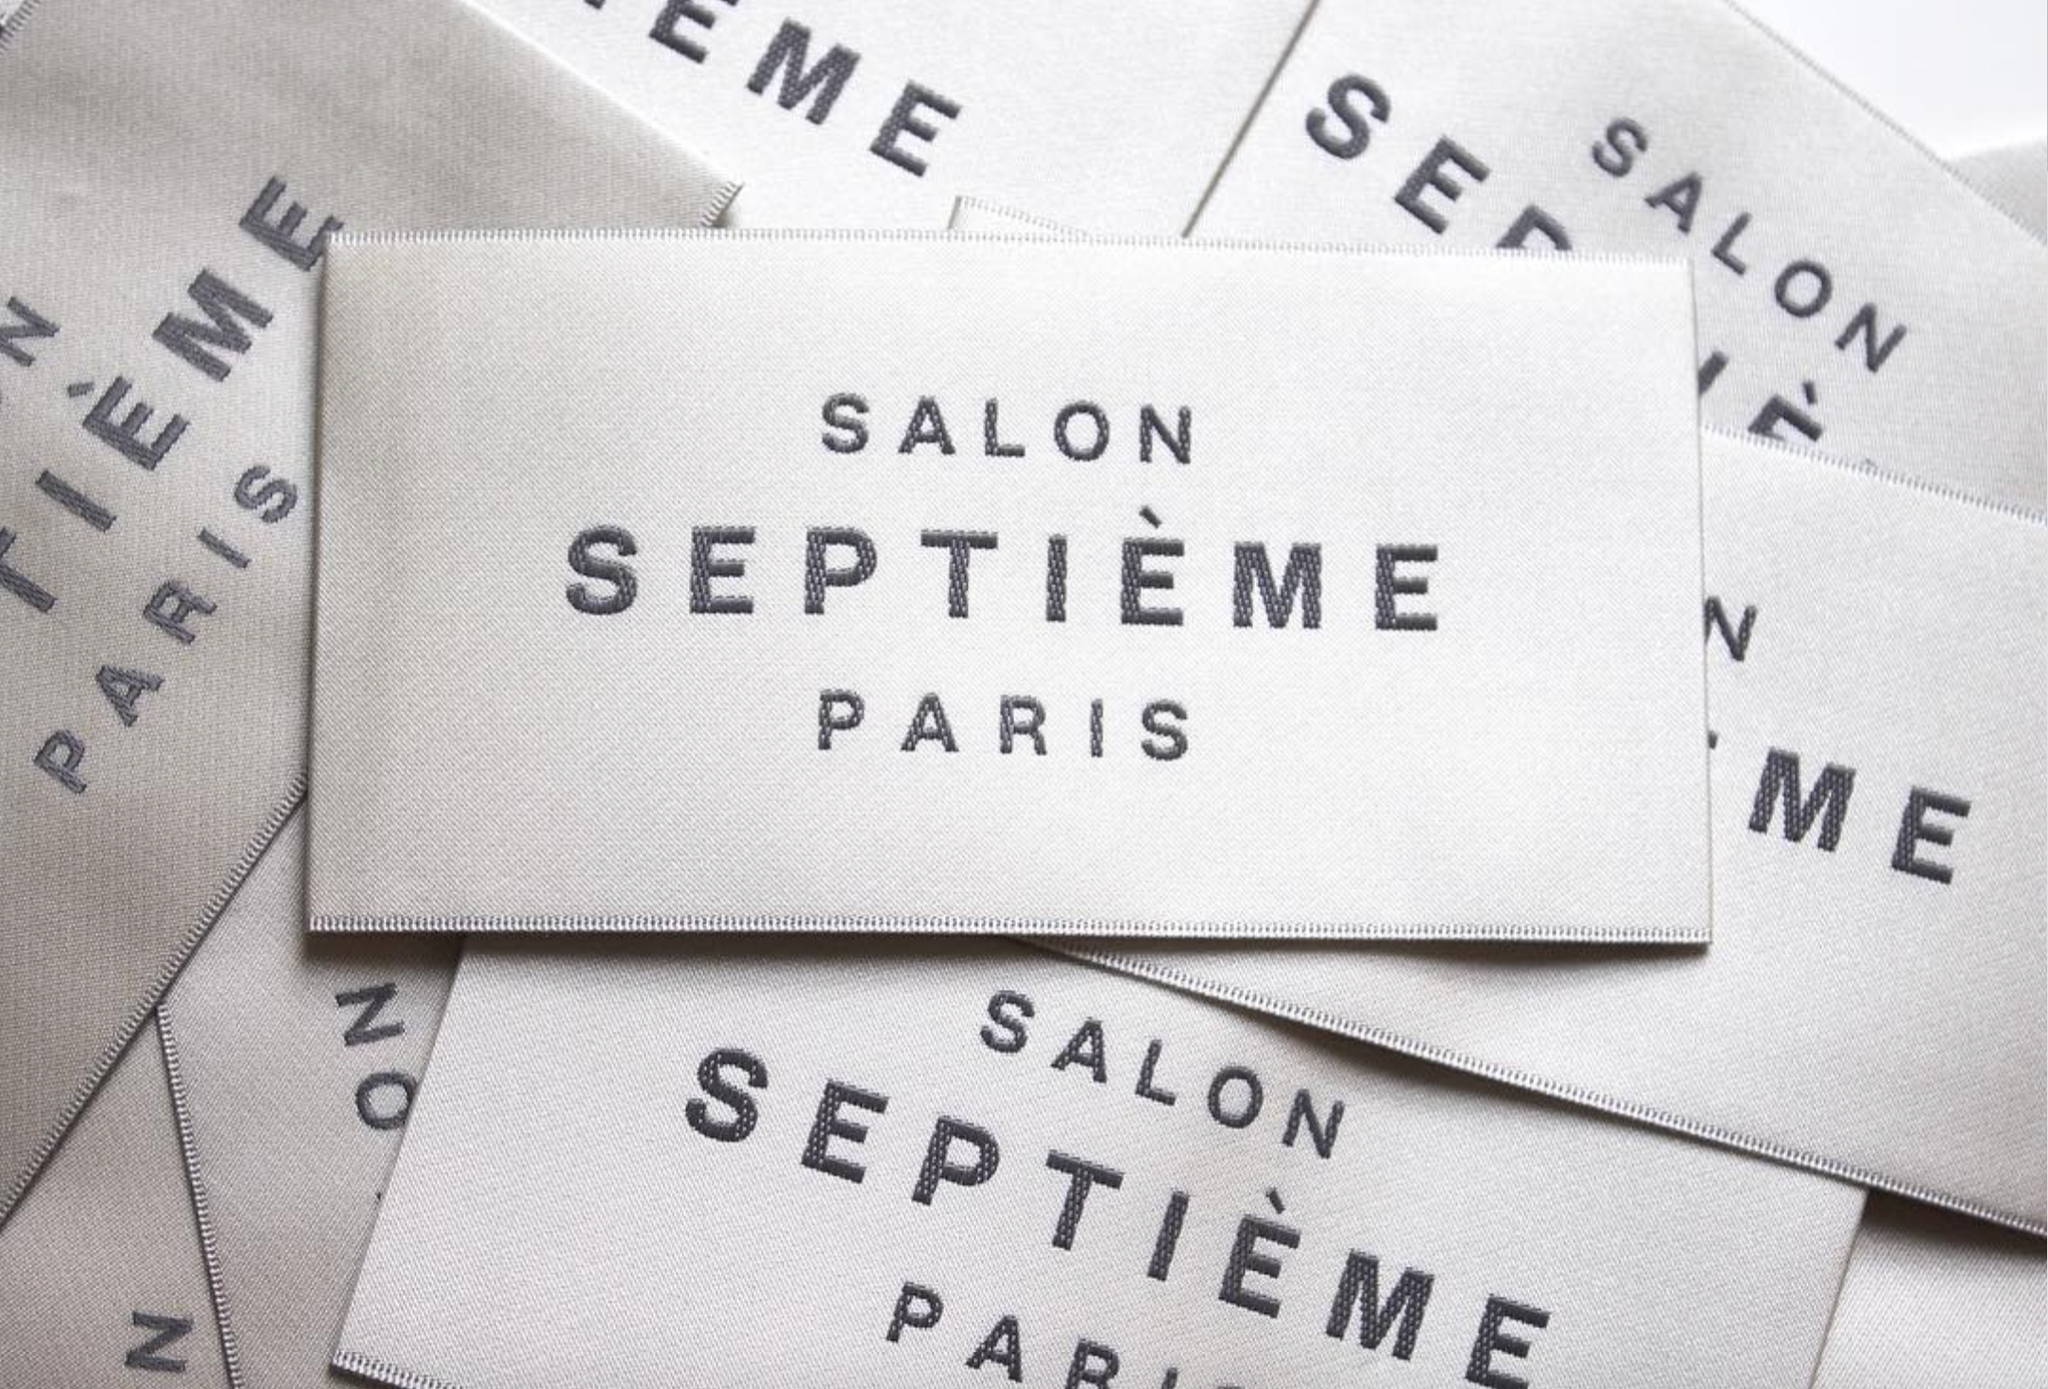 Salon Septième Paris Garment Tags